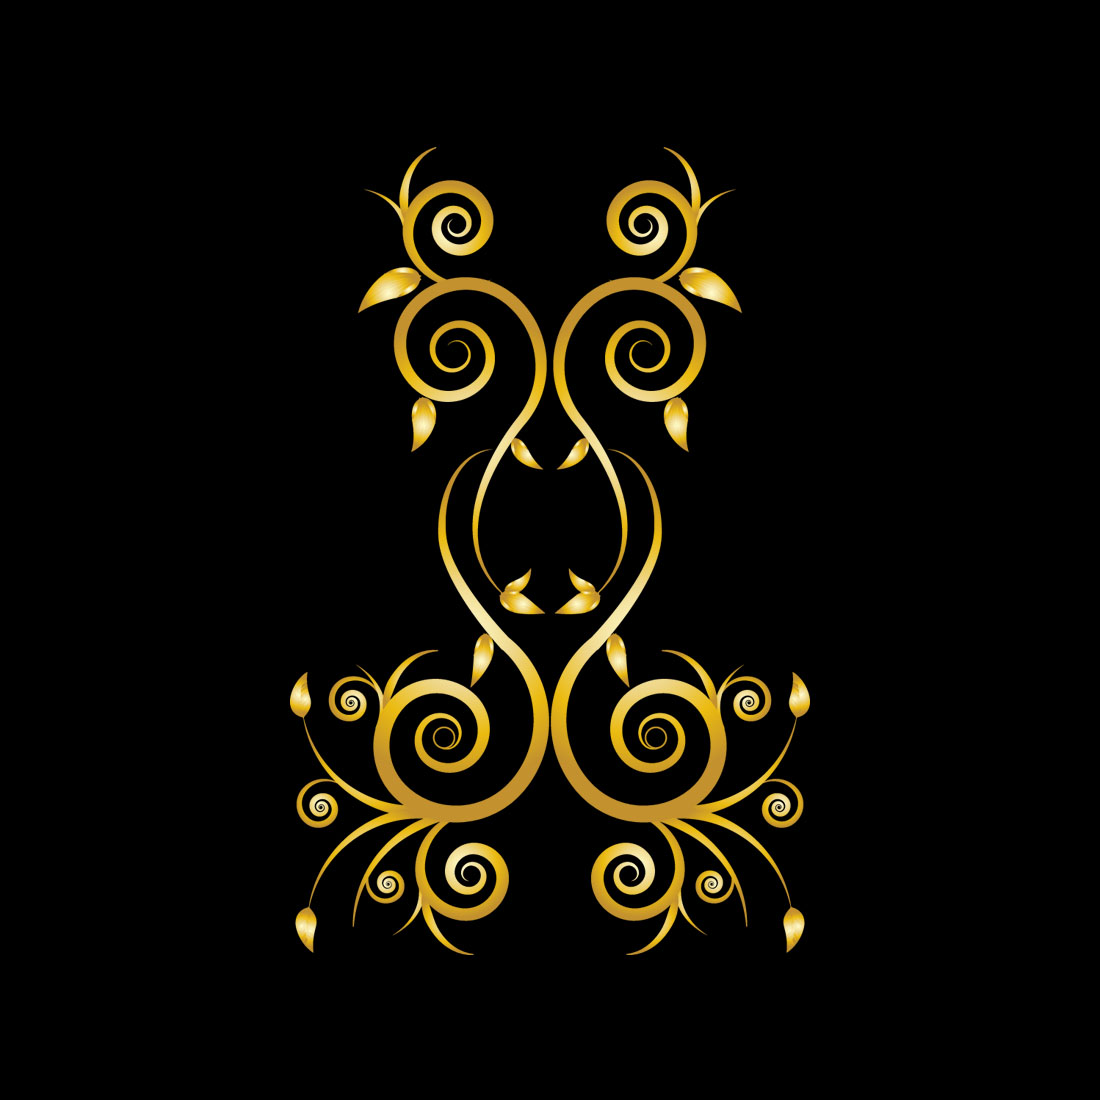 Elegance Golden Floral Ornament Frame Design Vector on Black Color.